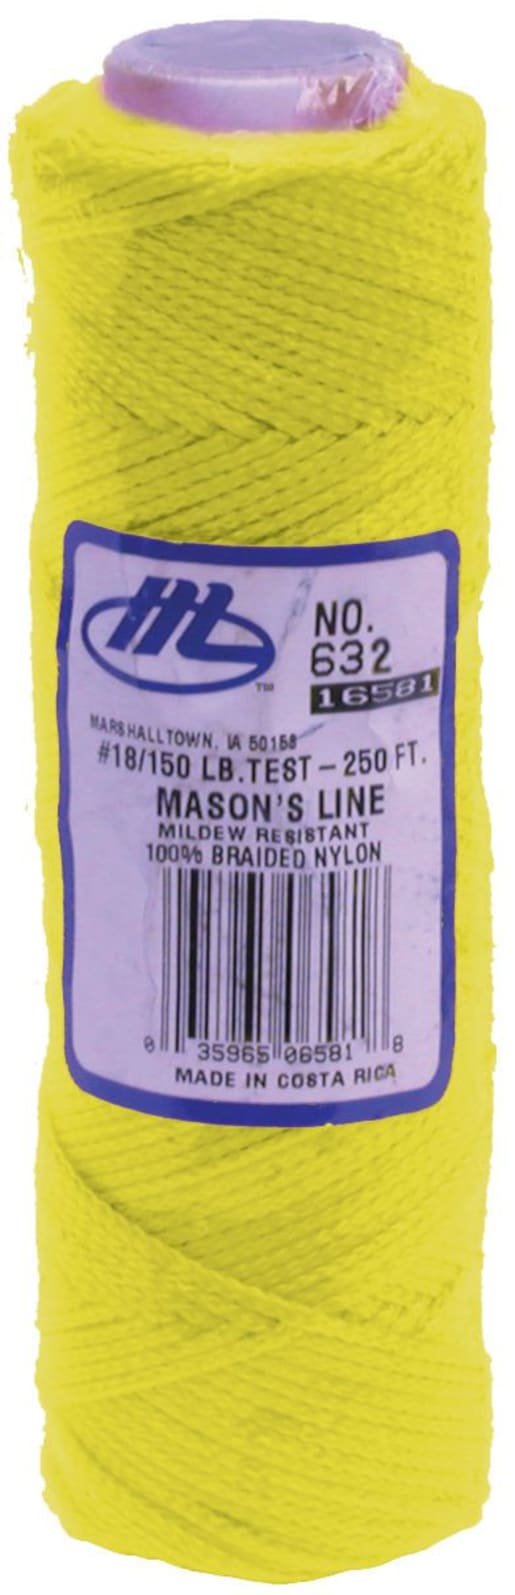 Pink & Yellow MARSHALLTOWN Braided Nylon Mason's Brick Line 87m/287' White 